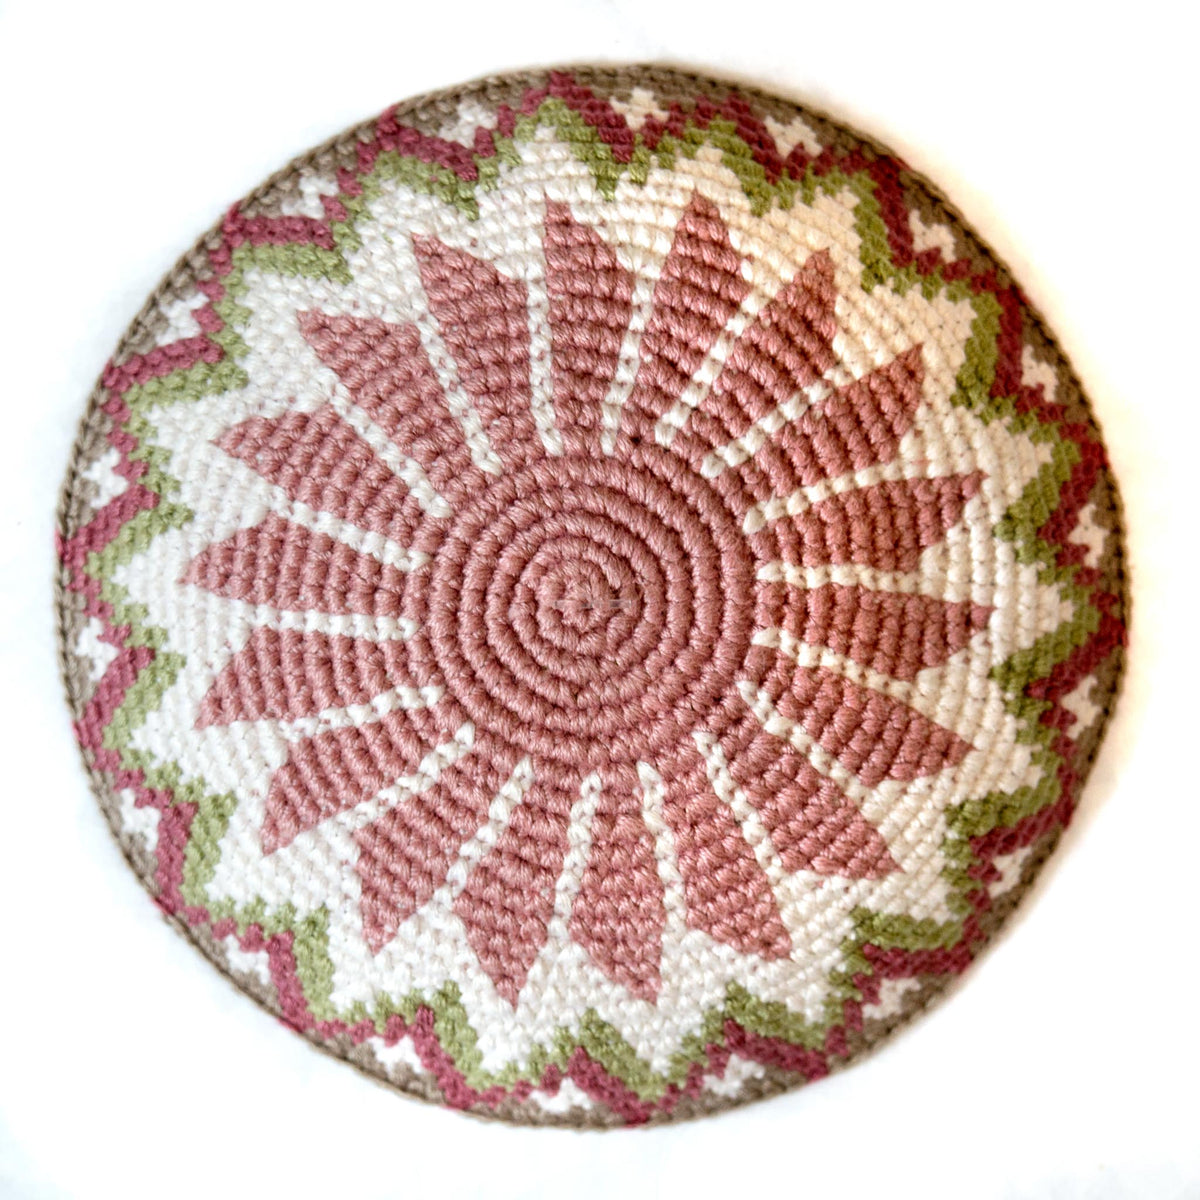 soft pink crocheted kippah